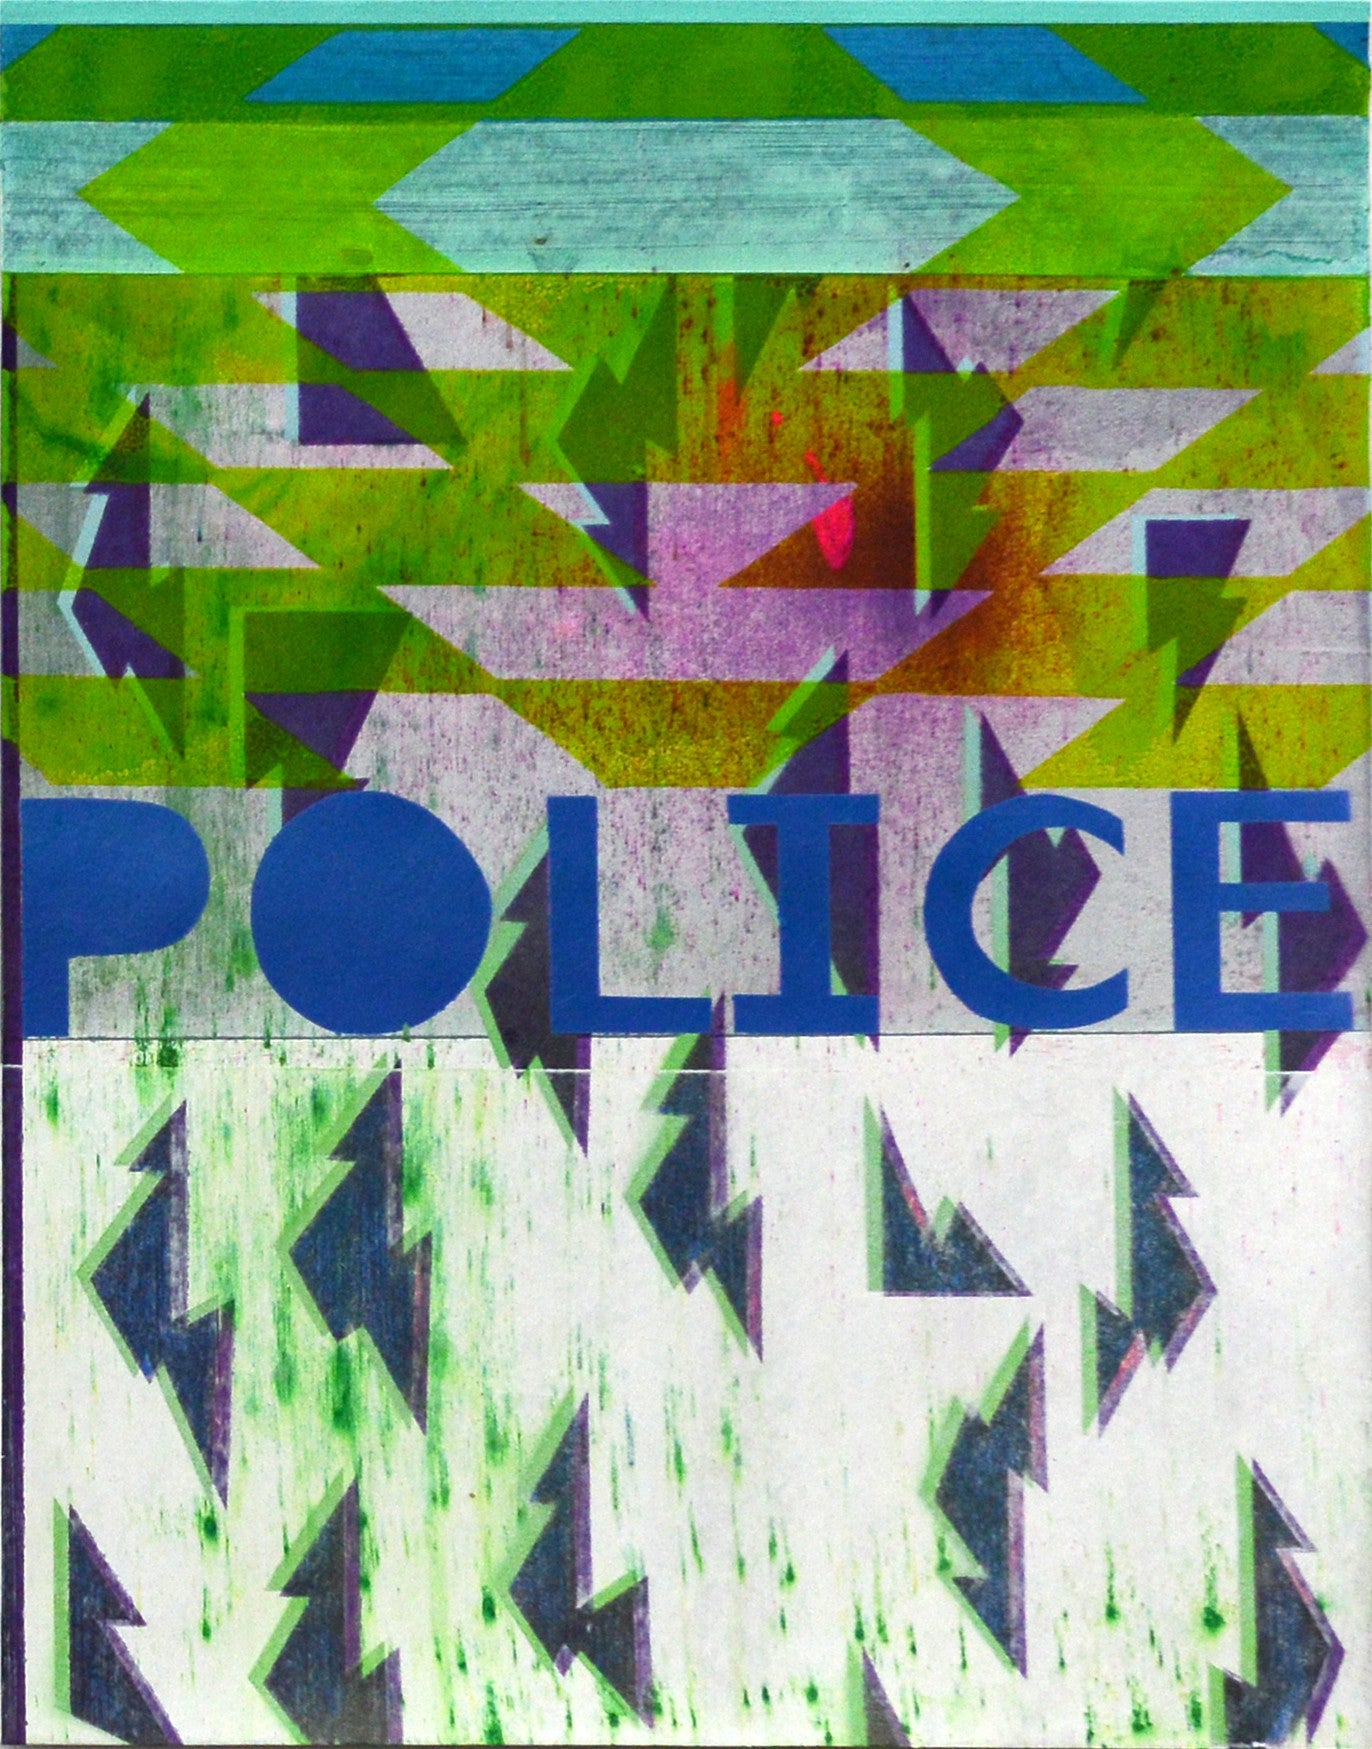 Kristen Schiele, "Police"